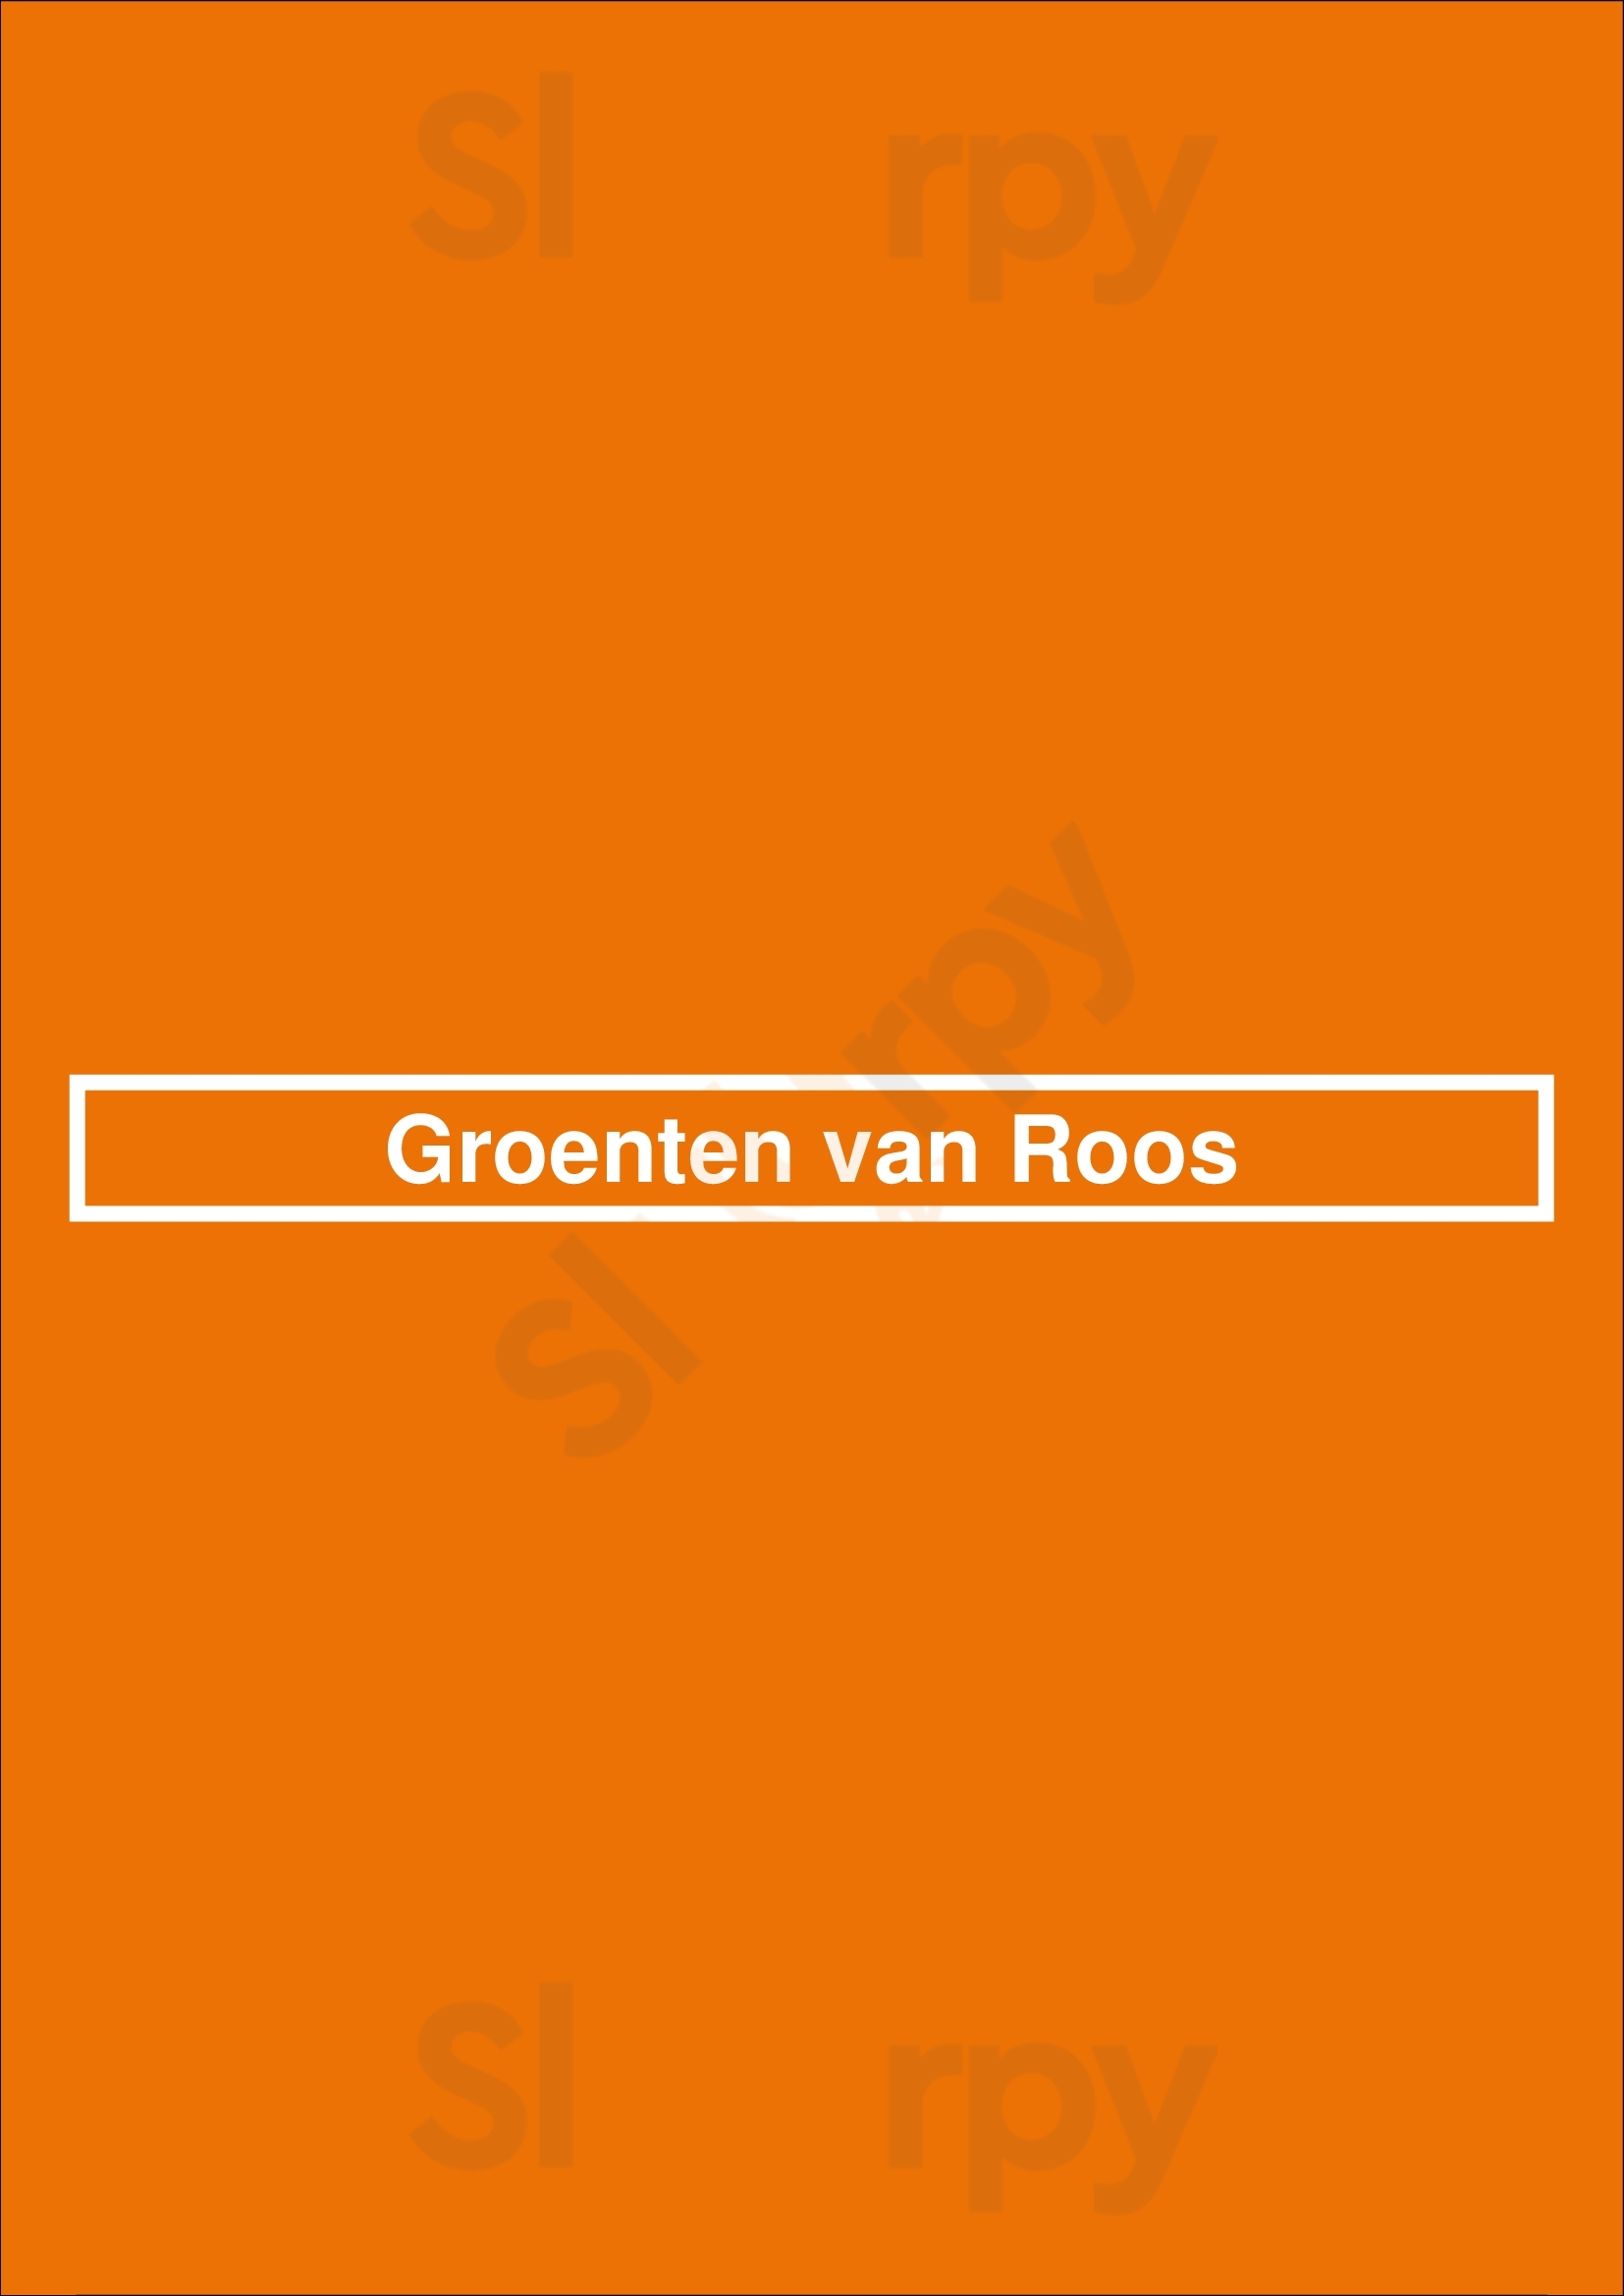 Groenten Van Roos Sittard Menu - 1